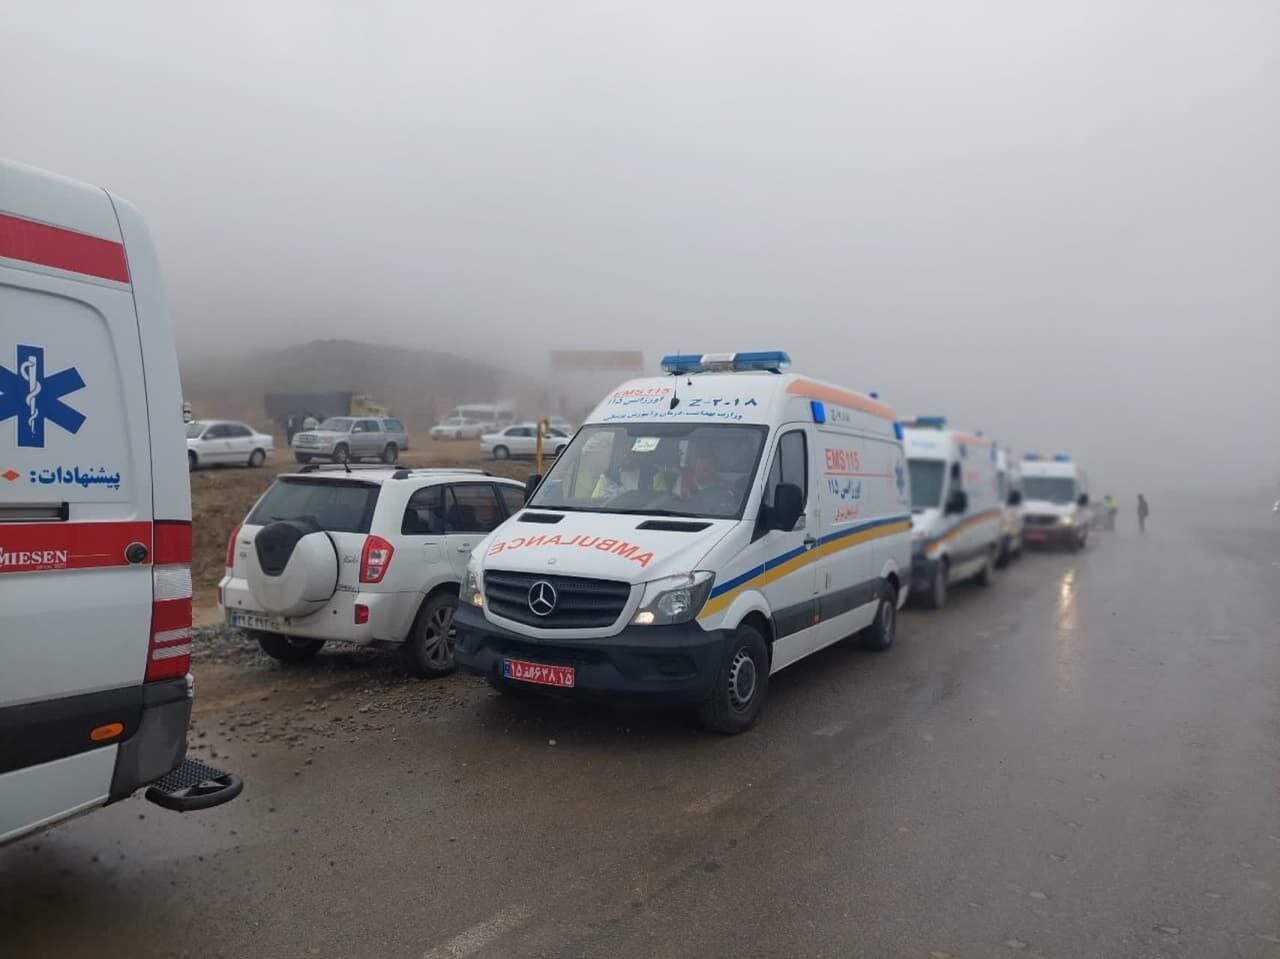 استقرار تیم پزشکی با تجهیزات کامل در محل سانحه - خبرگزاری مهر | اخبار ایران و جهان